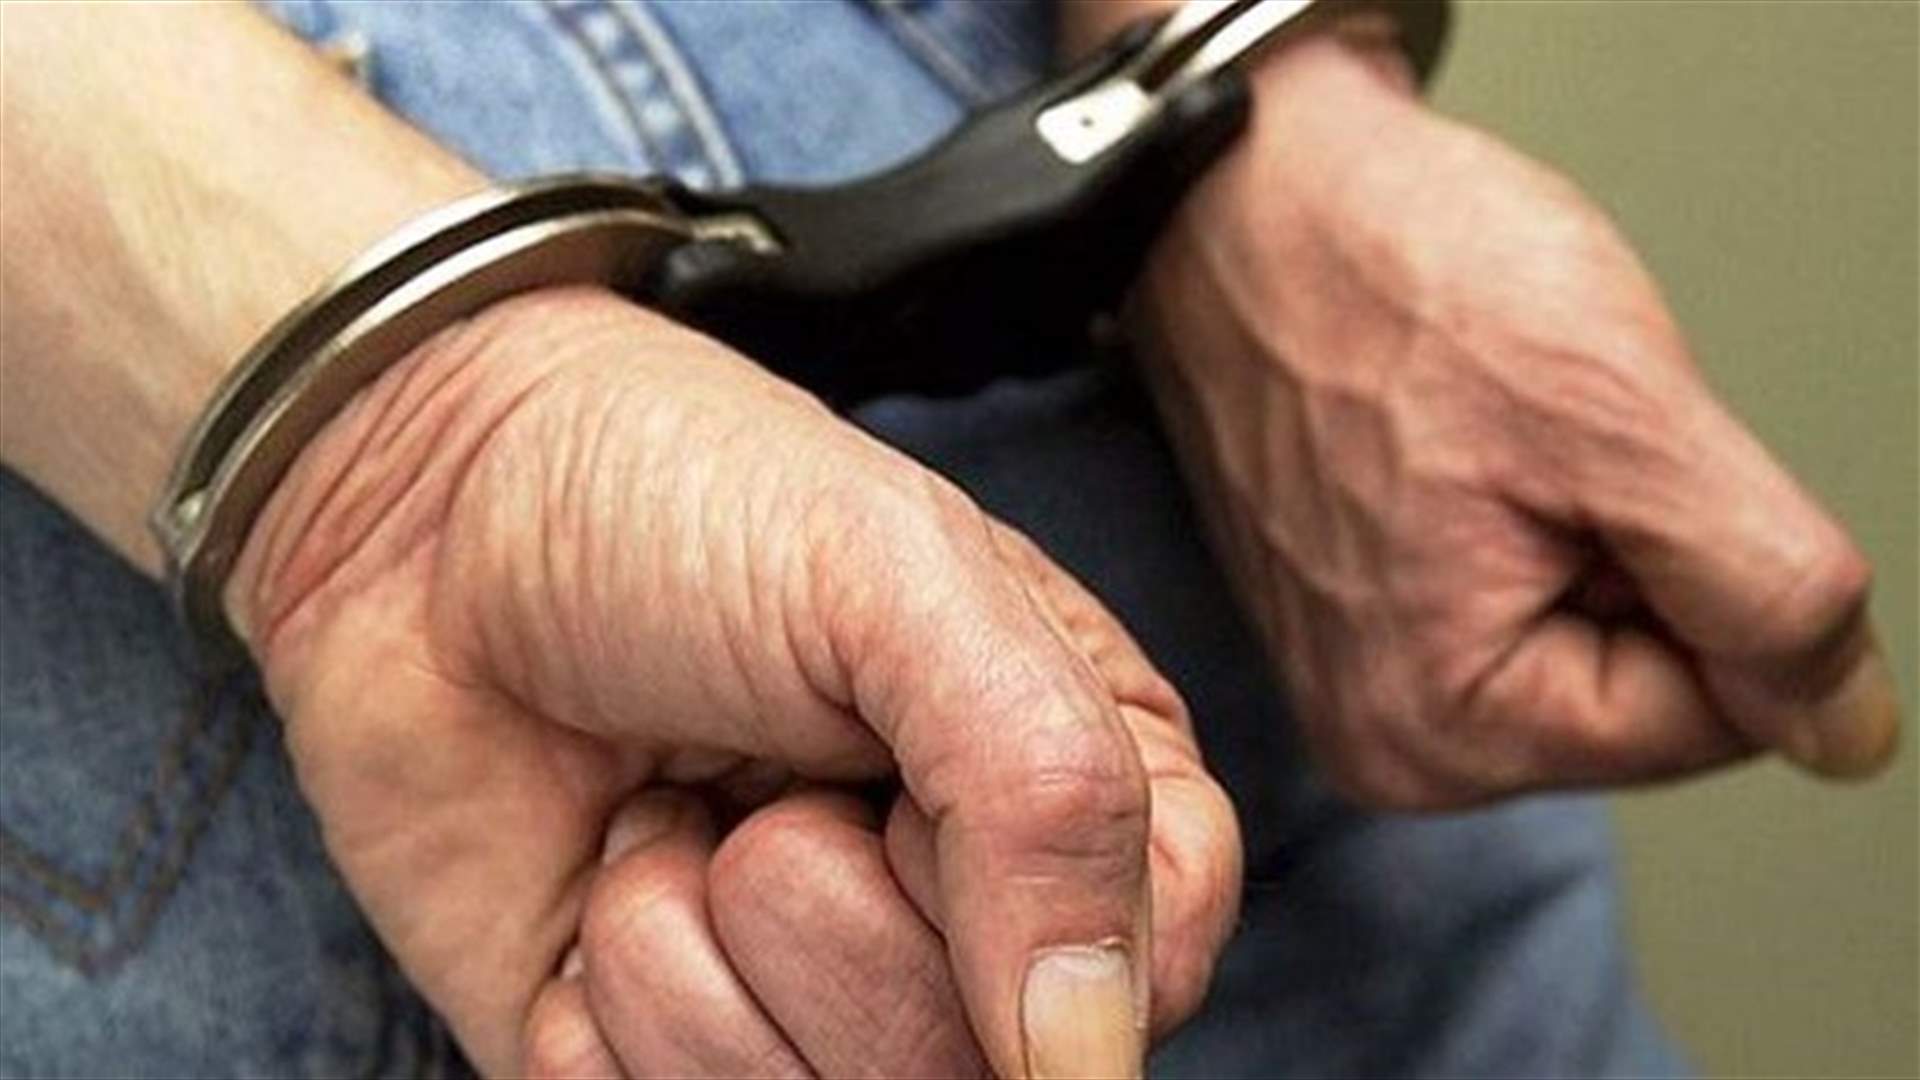 Man arrested for several crimes in Kaslik 